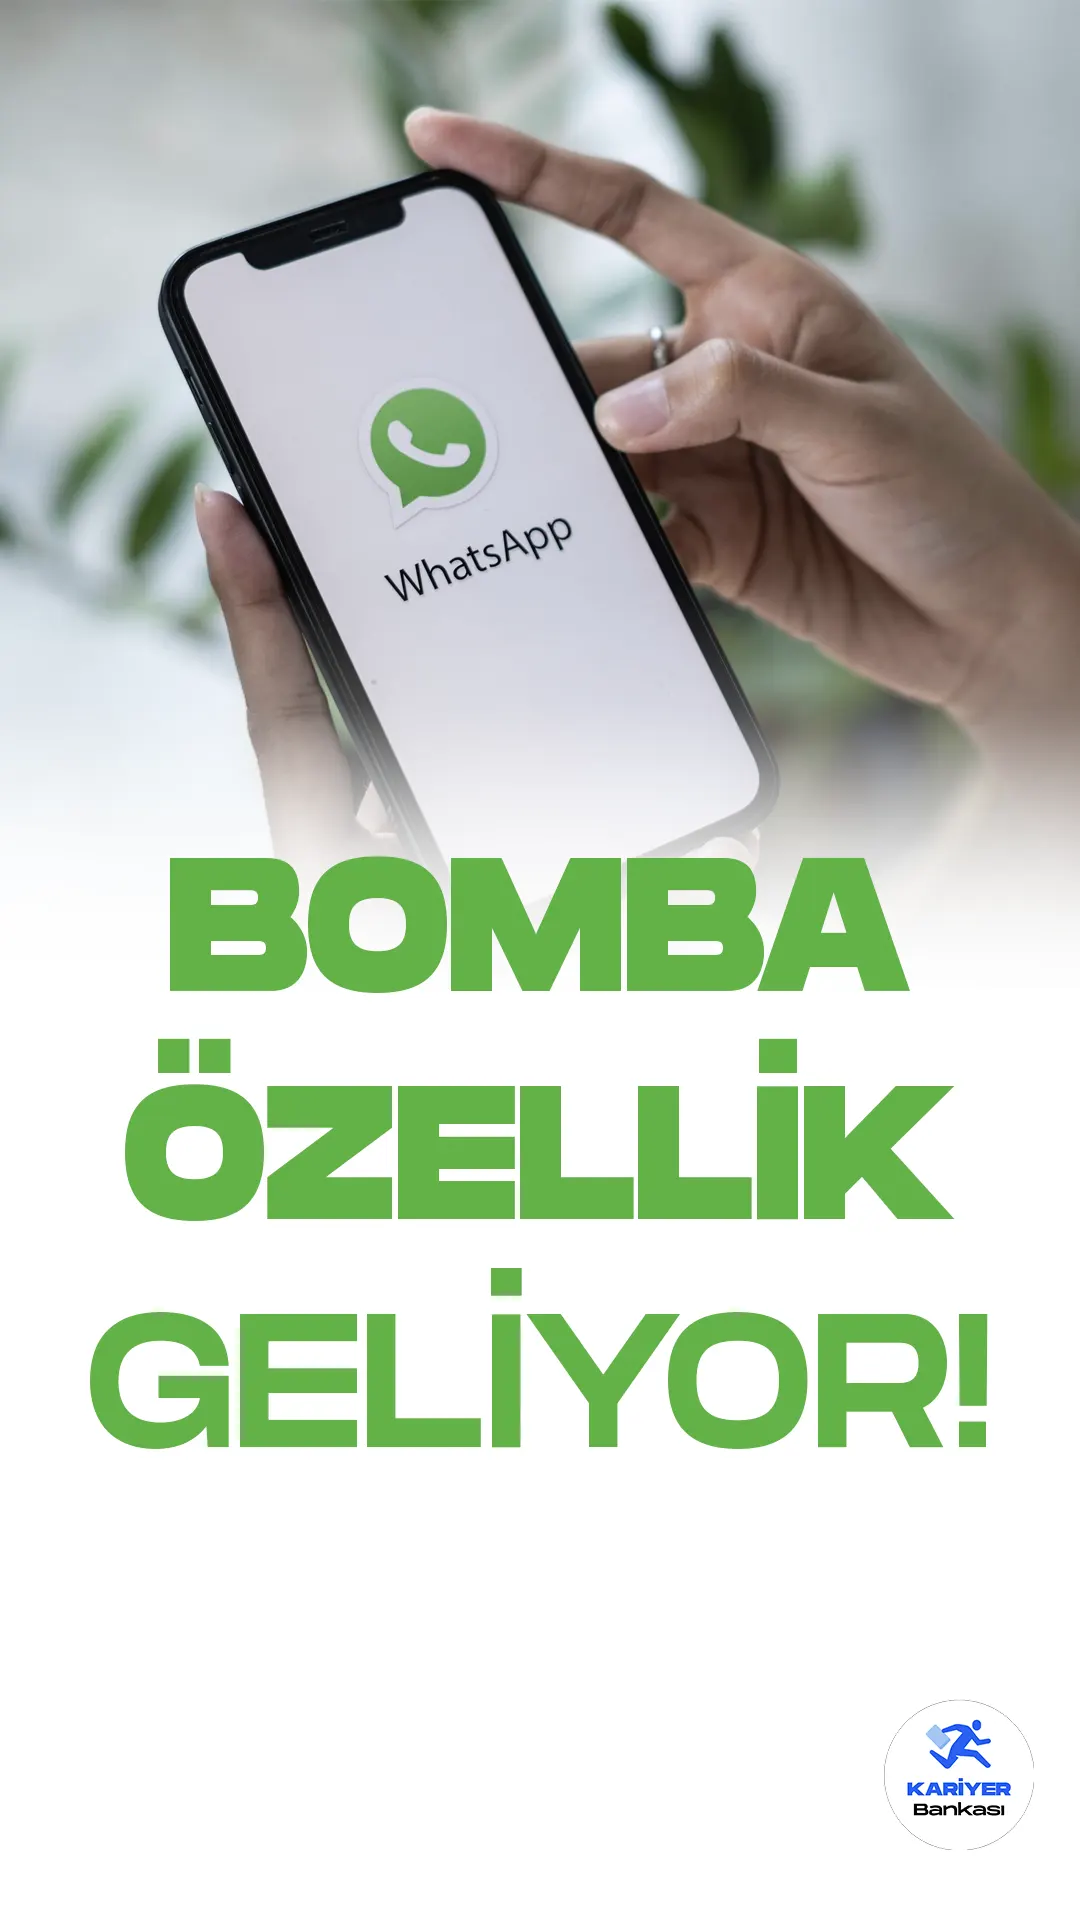 WhatsApp Her Bir Sohbet İçin Kilit Özelliği Getiriyor!WhatsApp, kullanıcılarına sunduğu yeni bir özellik ile ilgili çalışmalarını sürdürüyor. Yakında yayınlanması beklenen özellik sayesinde, her bir sohbet tek tek kilitlenebilecek.